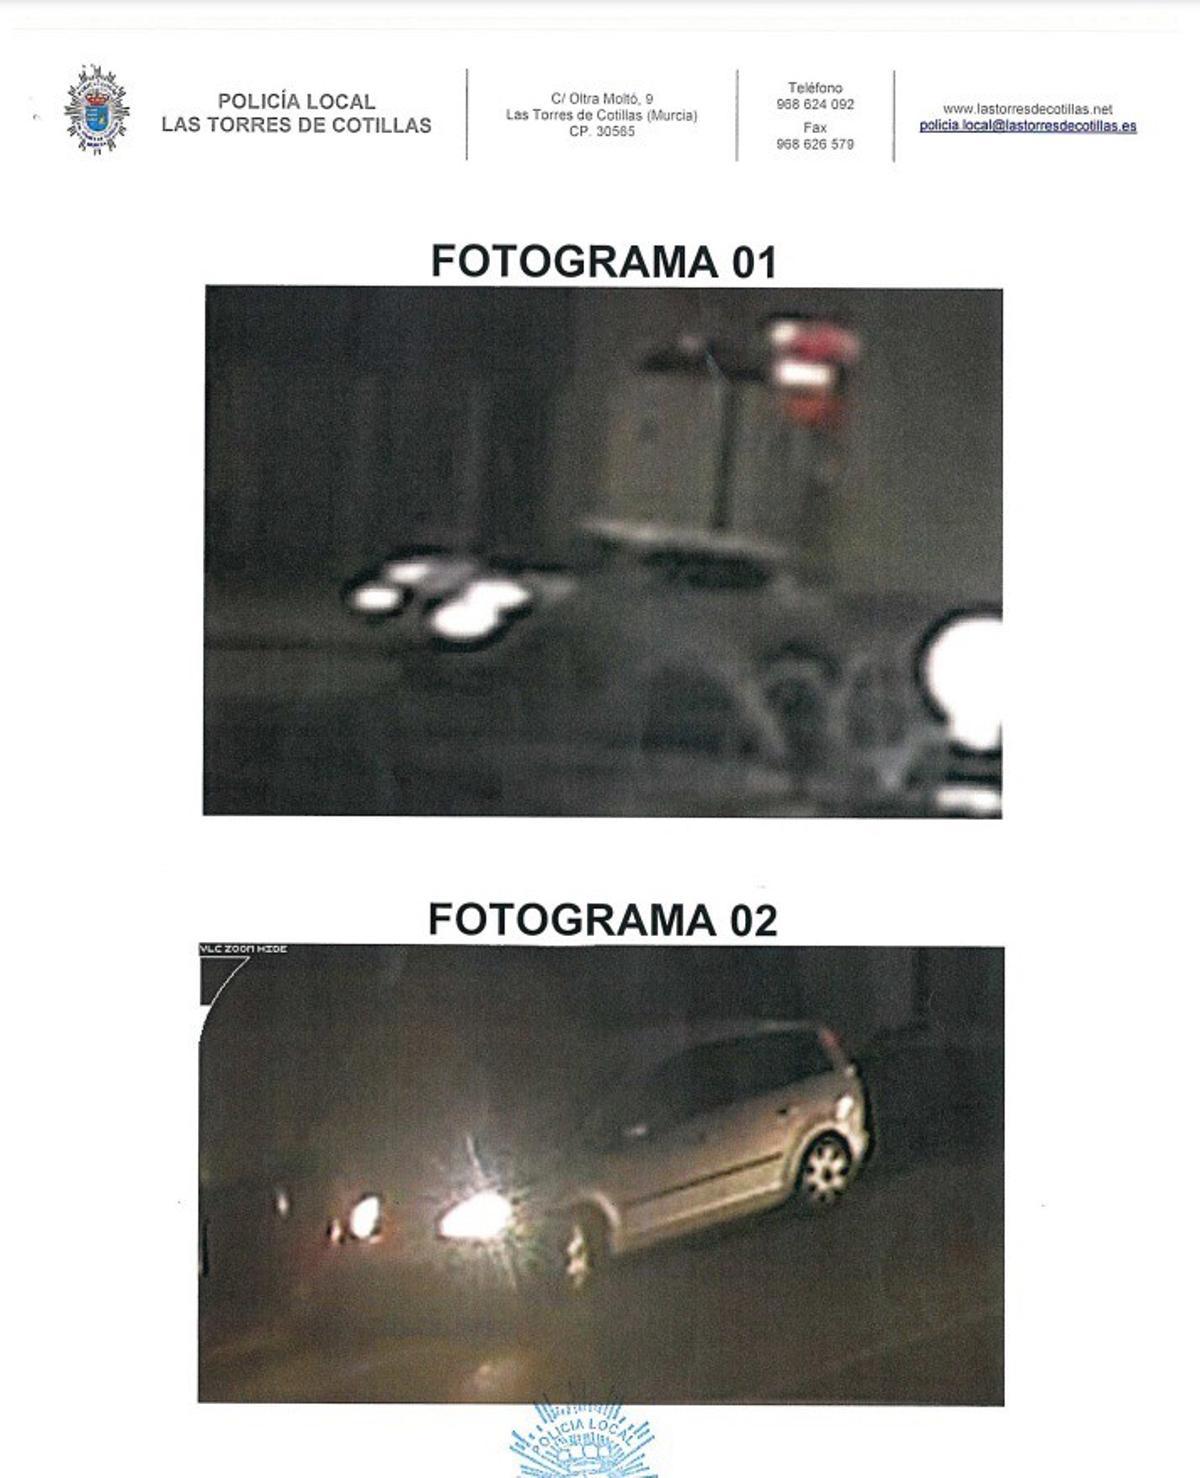 Fotograma del vehículo presunto causante (Fotograma 01) y fotograma del vehículo en el que va de acompañante la persona que interesa identificar (Fotograma 02)